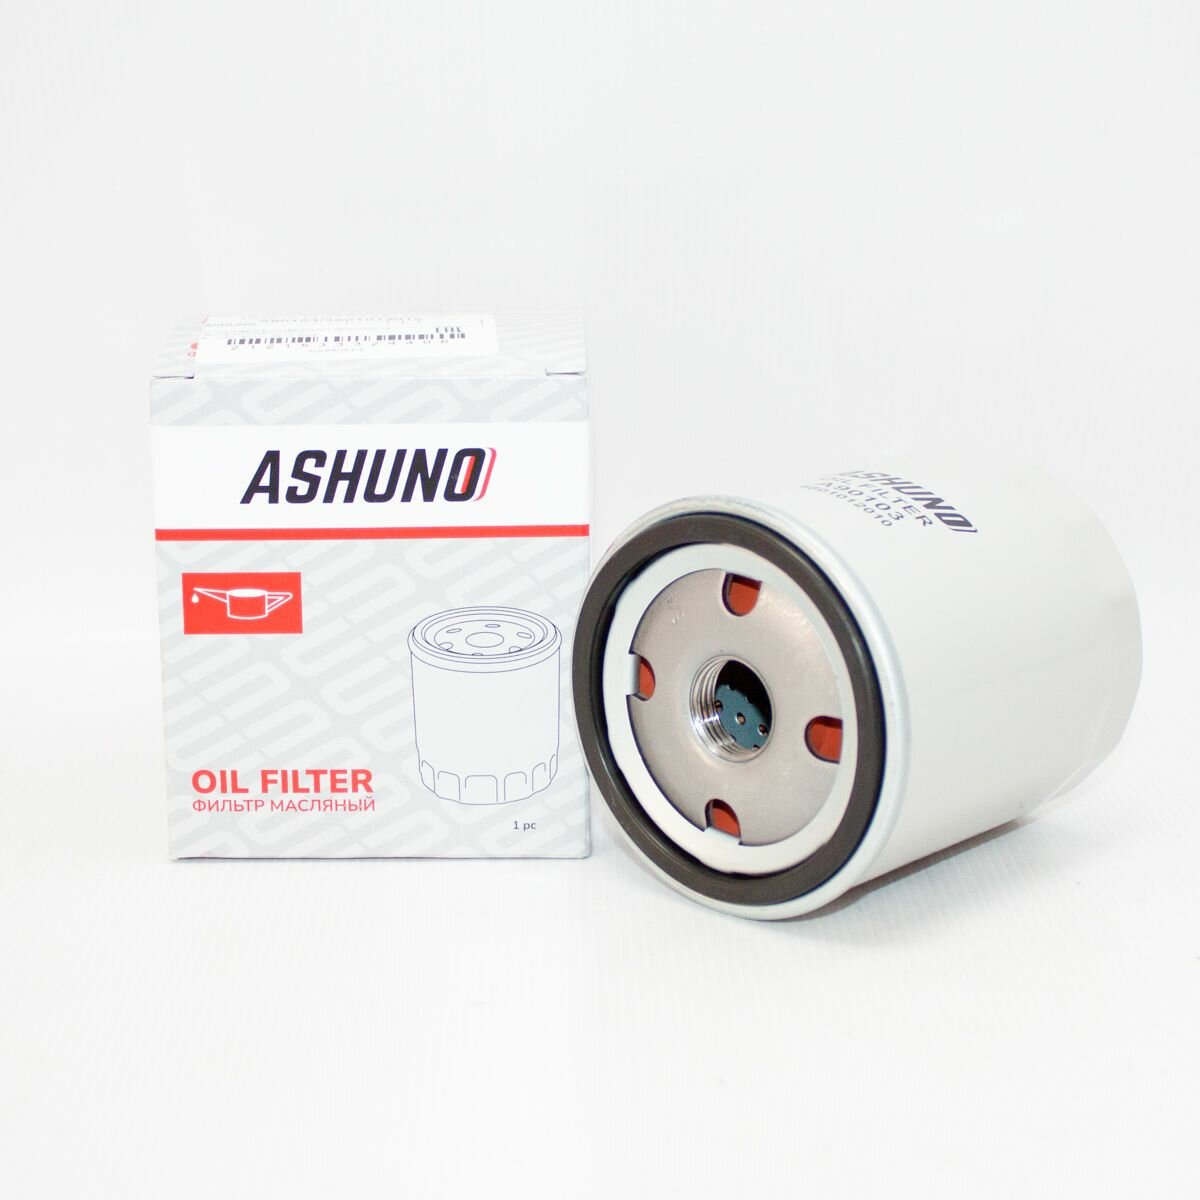 Фильтр масляный ASHUNO для CHERY Tiggo 4  7 Pro  8  Amulet / Чери Тиго  Амулет  A90103  4801012010